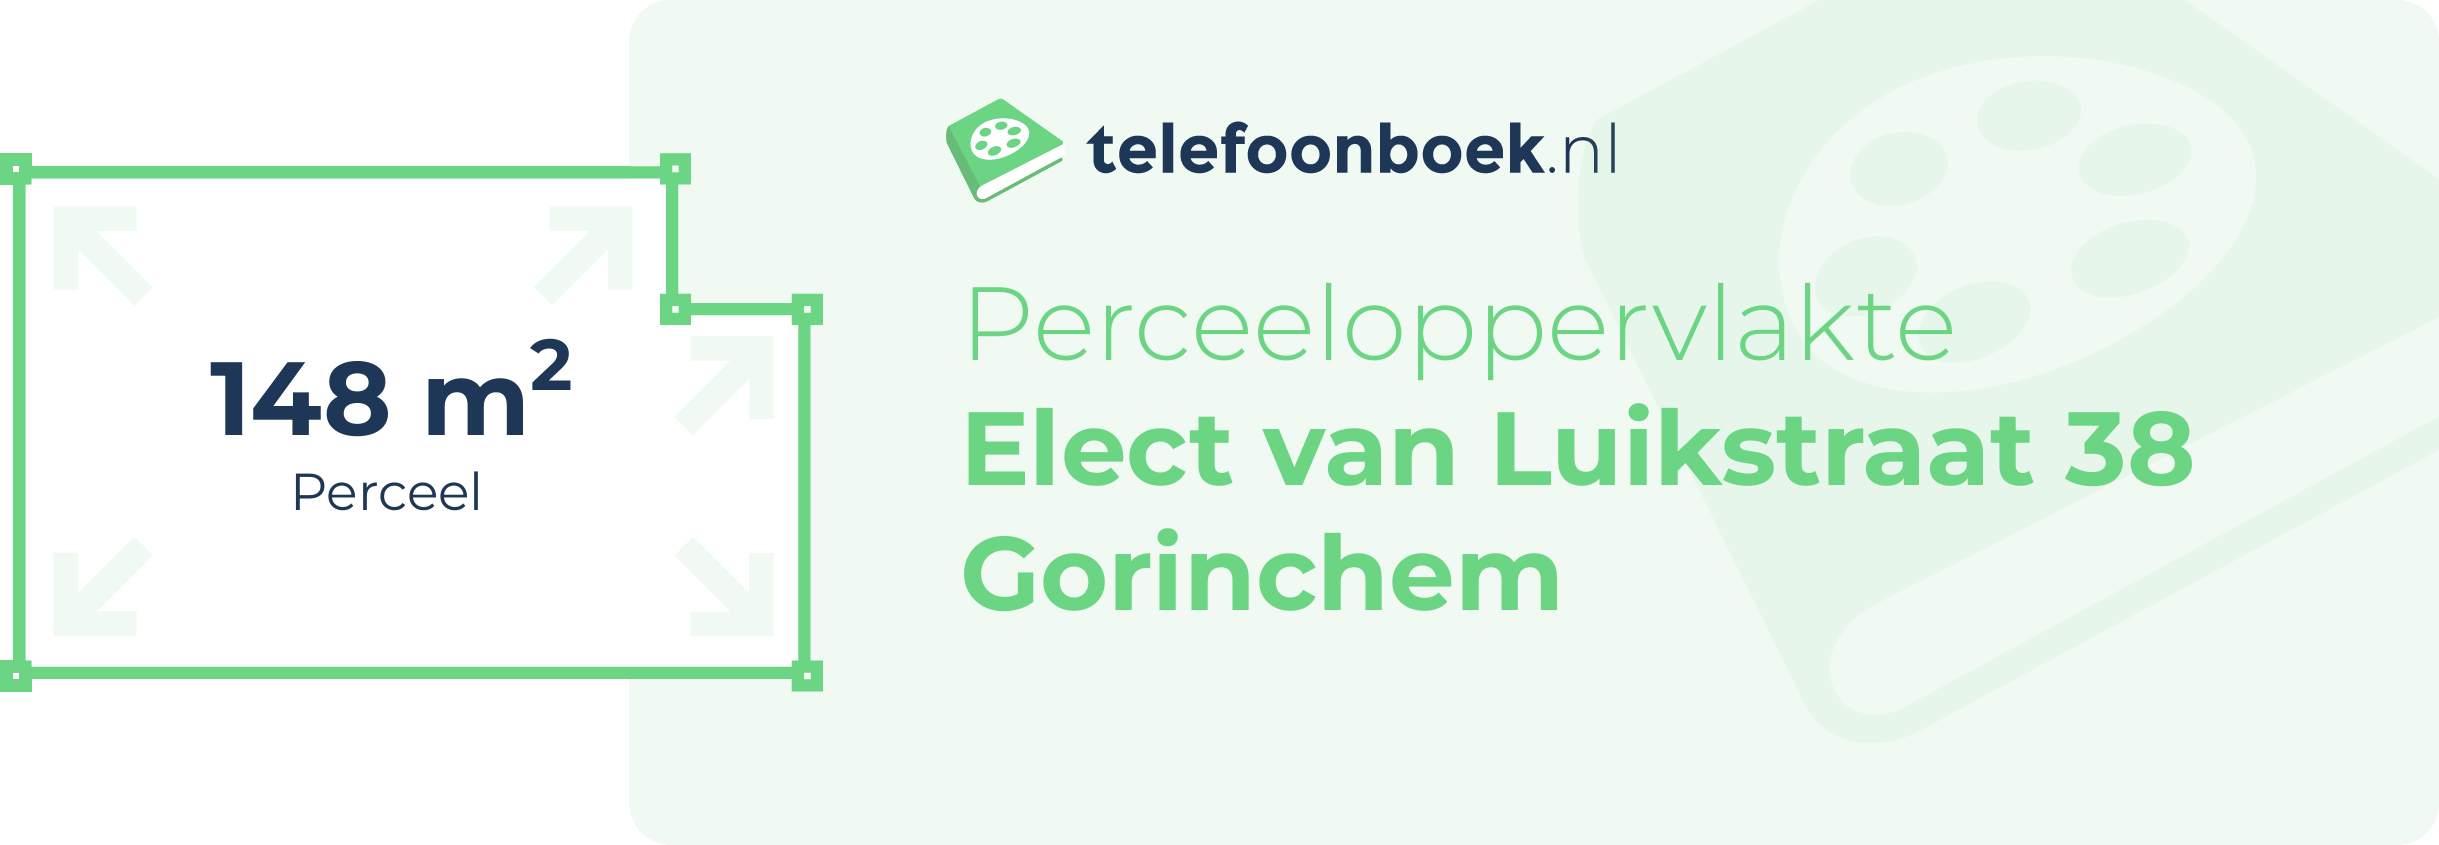 Perceeloppervlakte Elect Van Luikstraat 38 Gorinchem